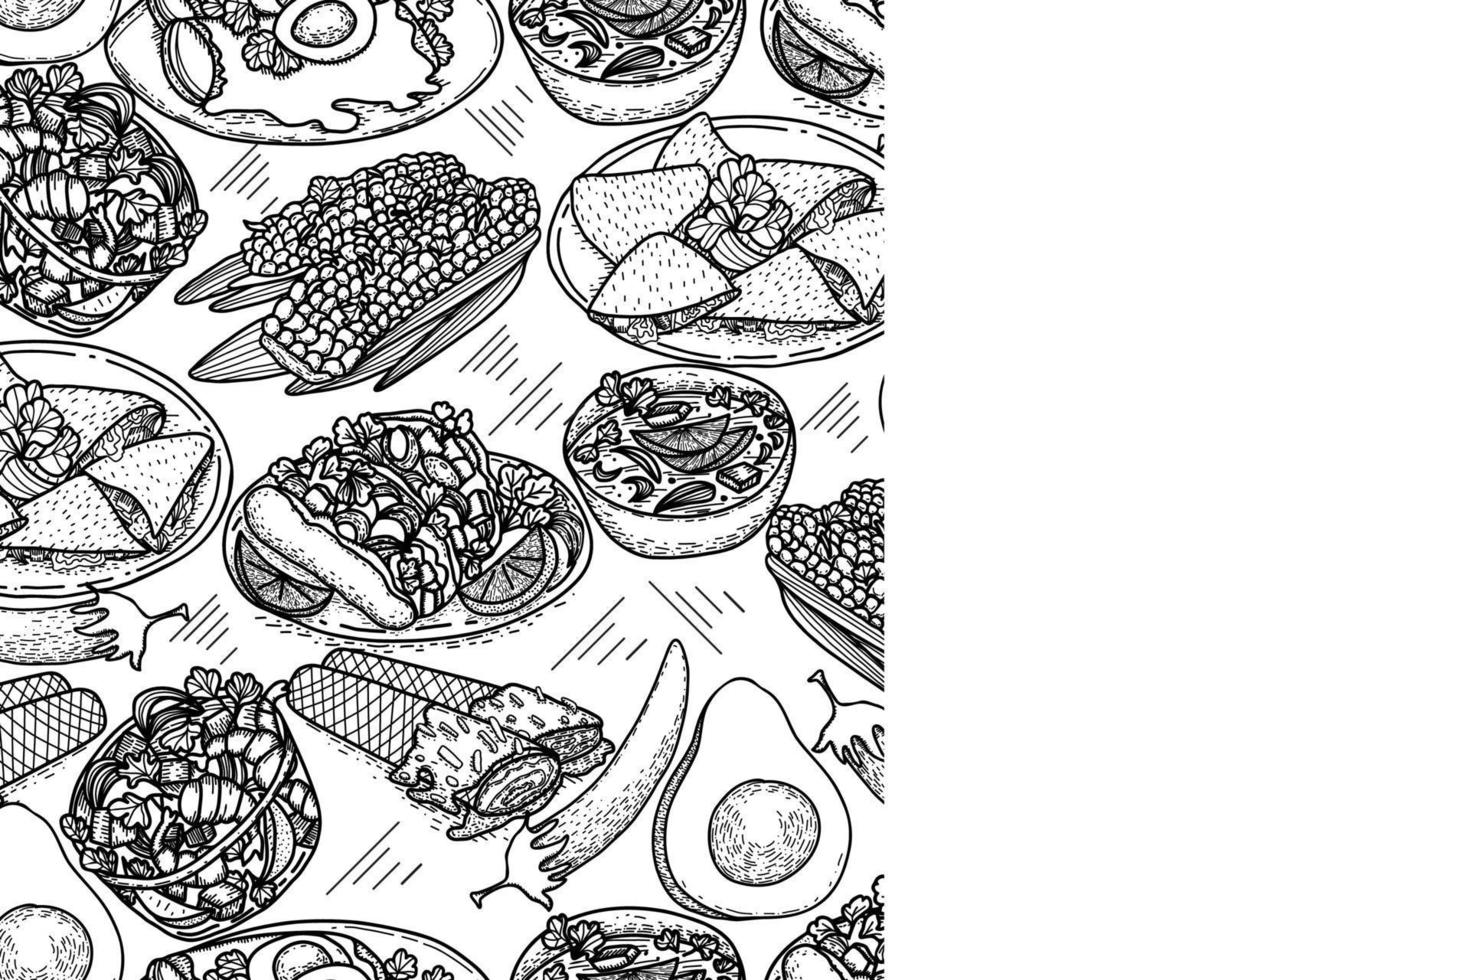 Vektor-Speisekarte-Vorlage, lateinamerikanische Küche. handgezeichnete schwarz-weiße vintage skizzen von mexikanischem essen. vektor